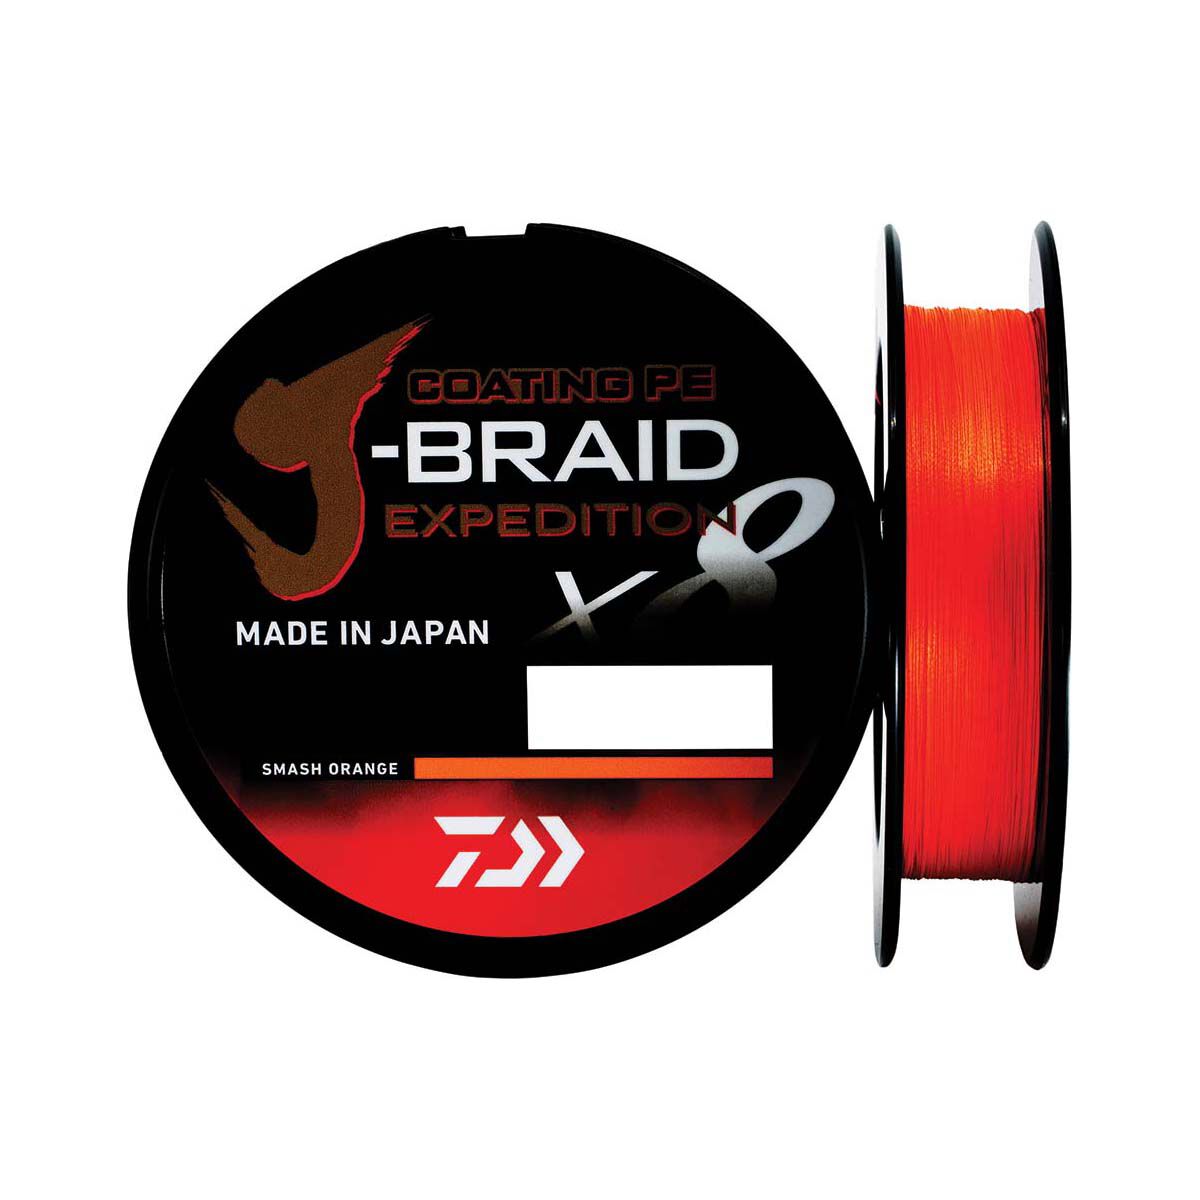 Daiwa J-Braid Grand X8 w/ FREE Braid Scissors – Wind Rose North